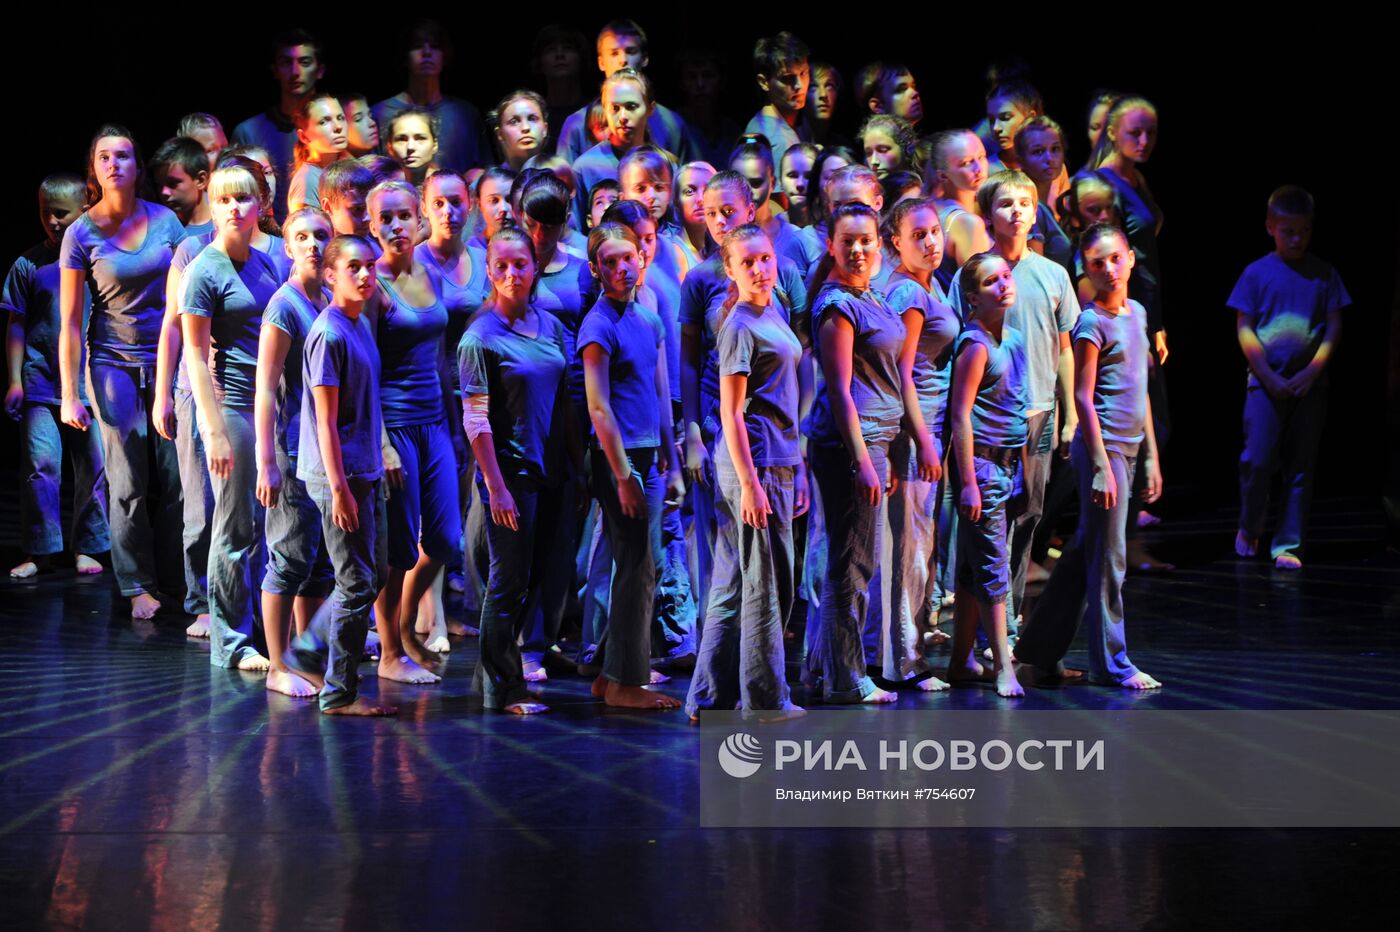 Открытие Большого фестиваля Российского национального оркестра